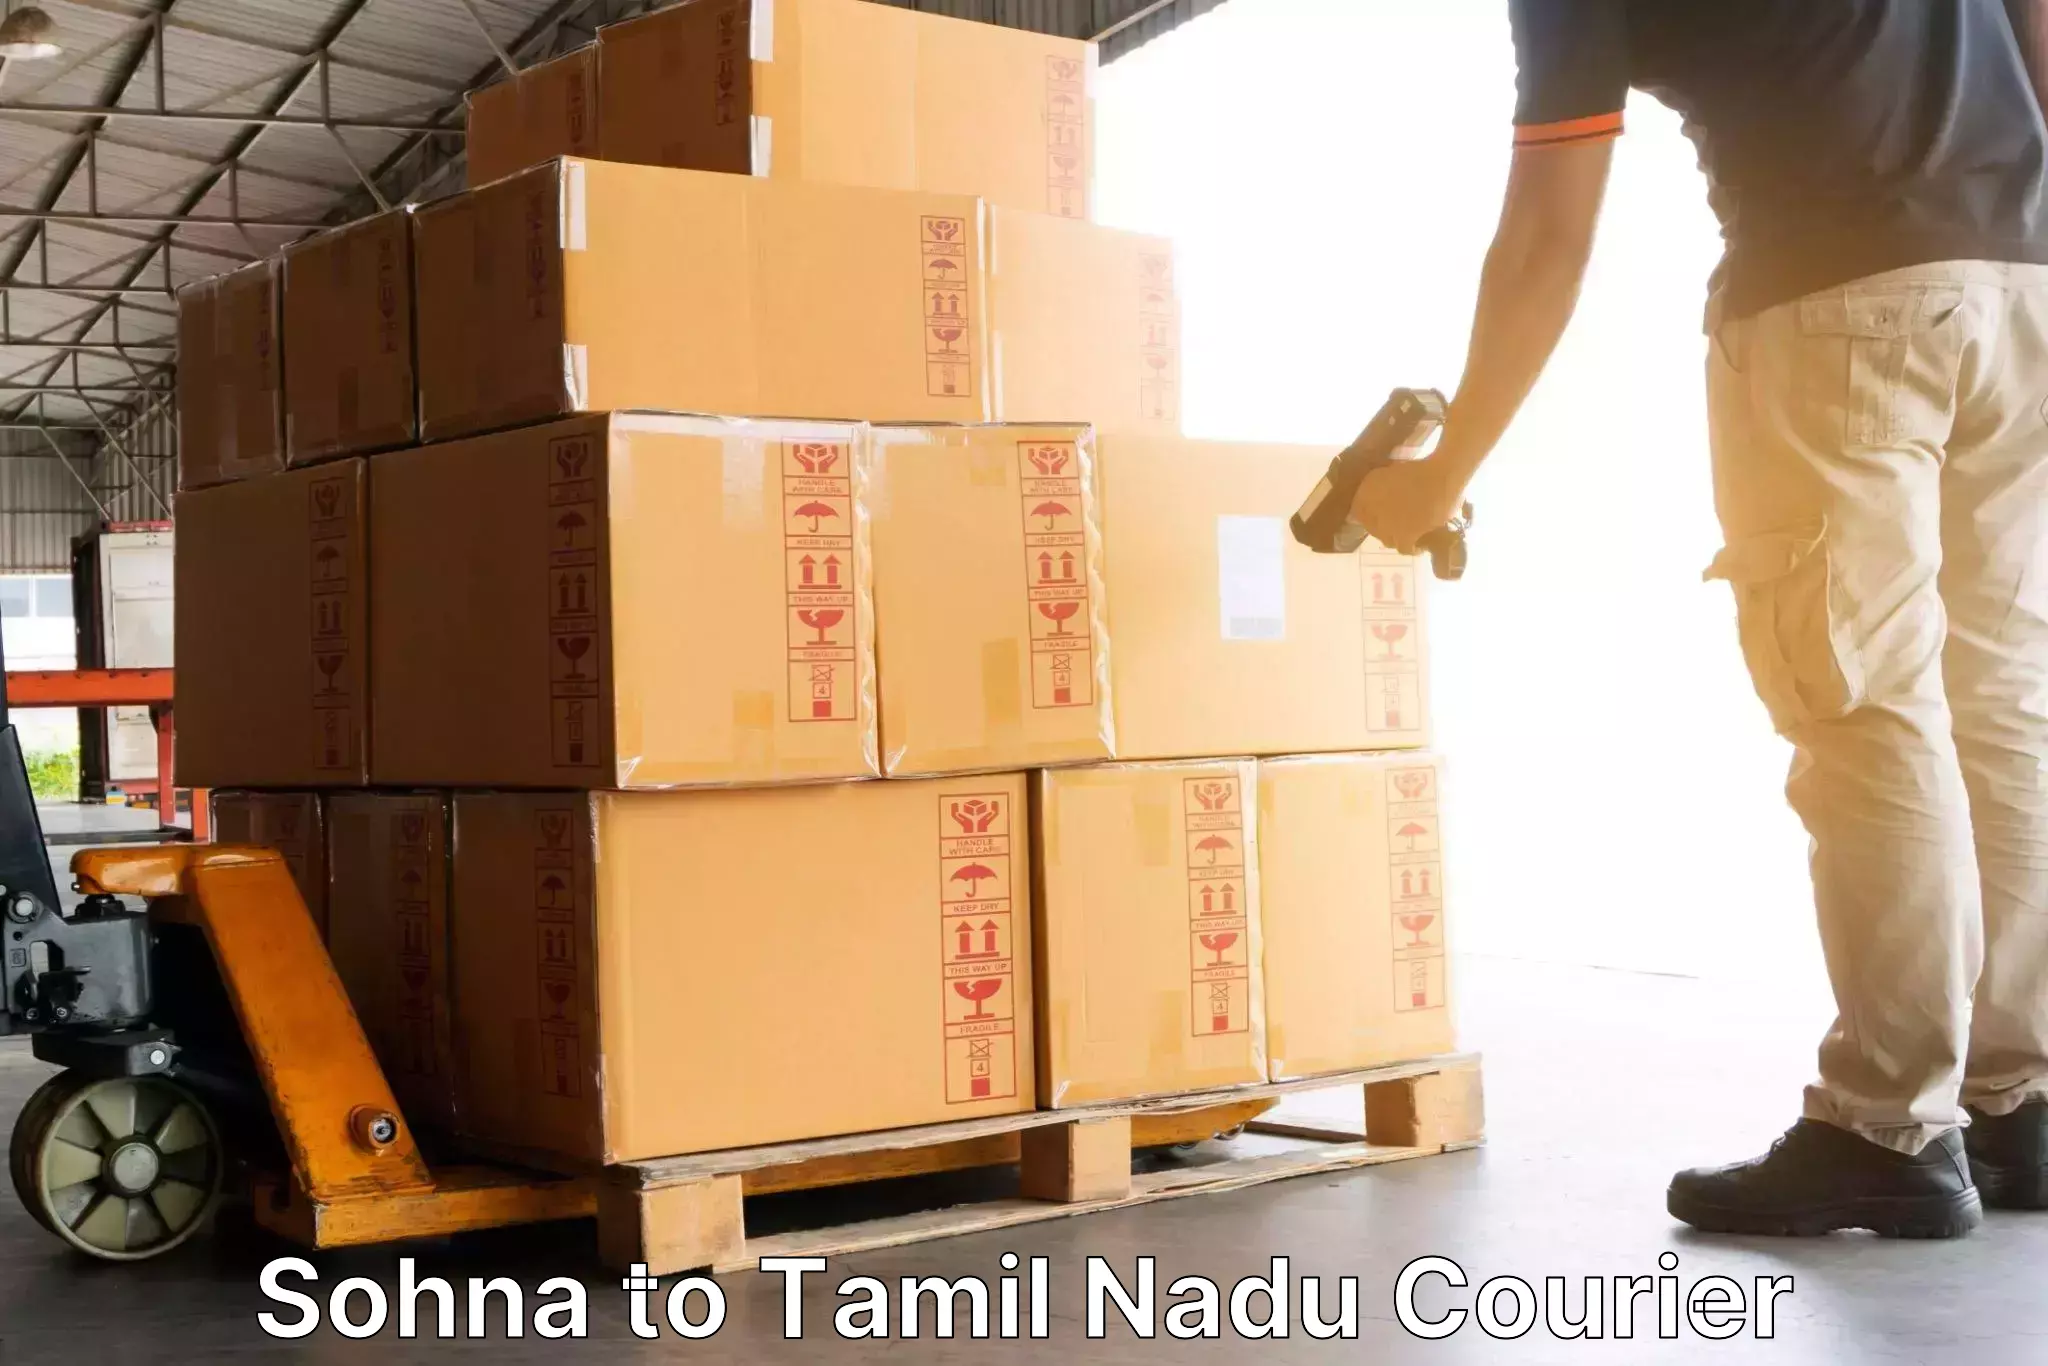 Courier service partnerships Sohna to Tiruturaipundi